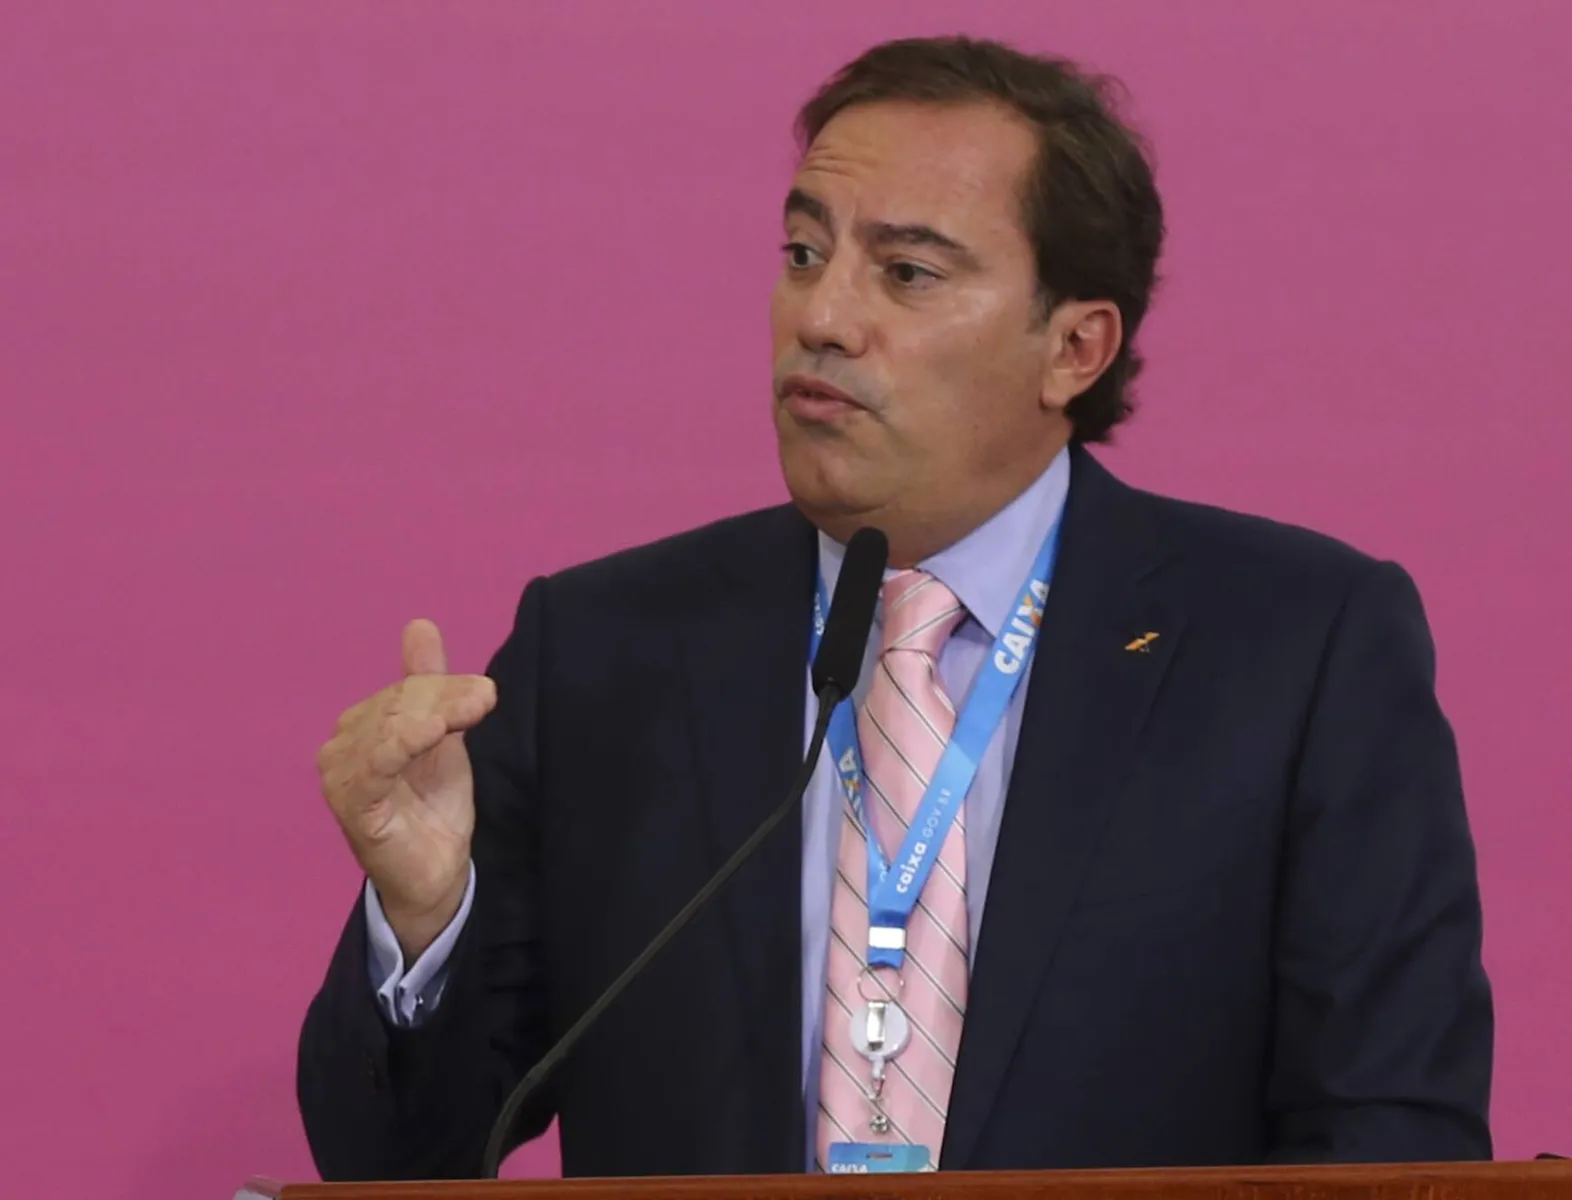 O presidente da Caixa Econômica Federal, Pedro Guimarães, participa da solenidade de lançamento de uma série de iniciativas voltadas ao público feminino, no Dia Internacional da Mulher